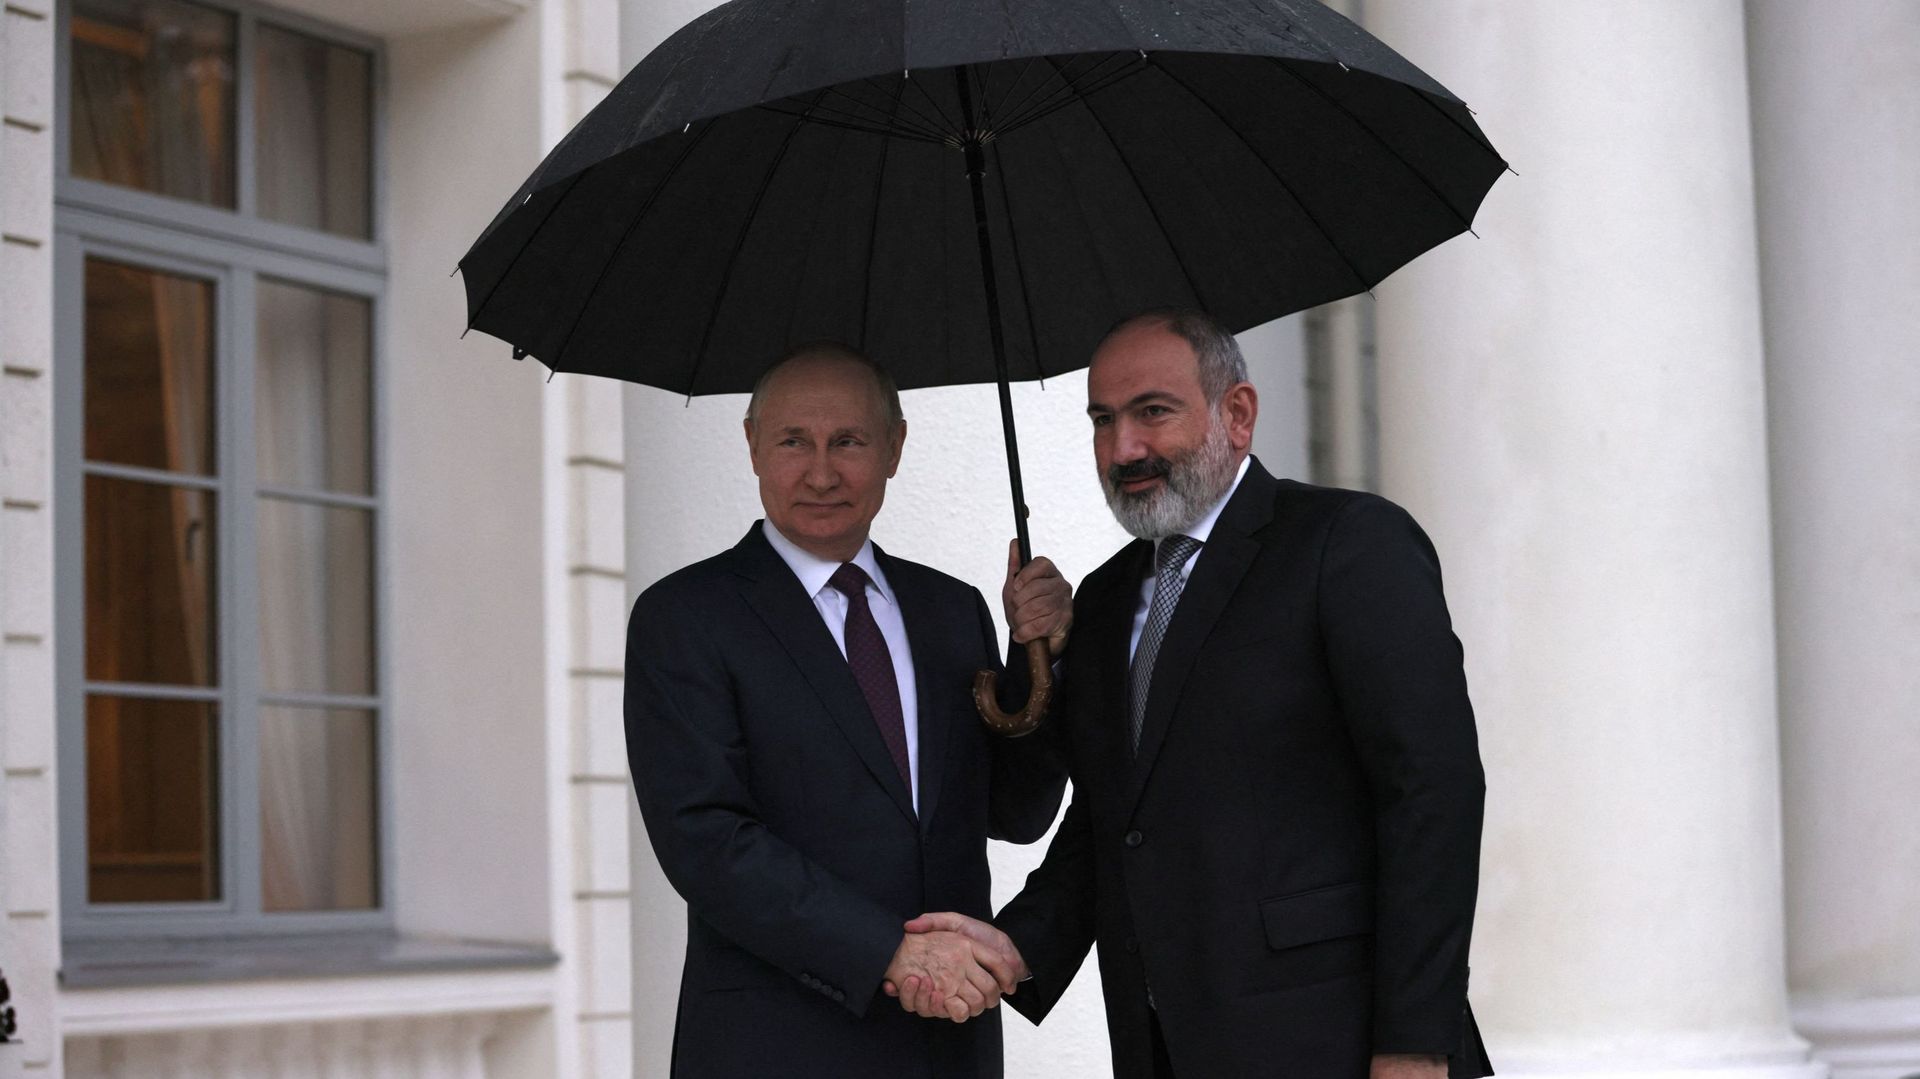 Le président russe Vladimir Poutine accueille le Premier ministre arménien Nikol Pashinyan avant une réunion du président russe avec les dirigeants de l’Arménie et de l’Azerbaïdjan à Stotchi, le 31 octobre 2022.